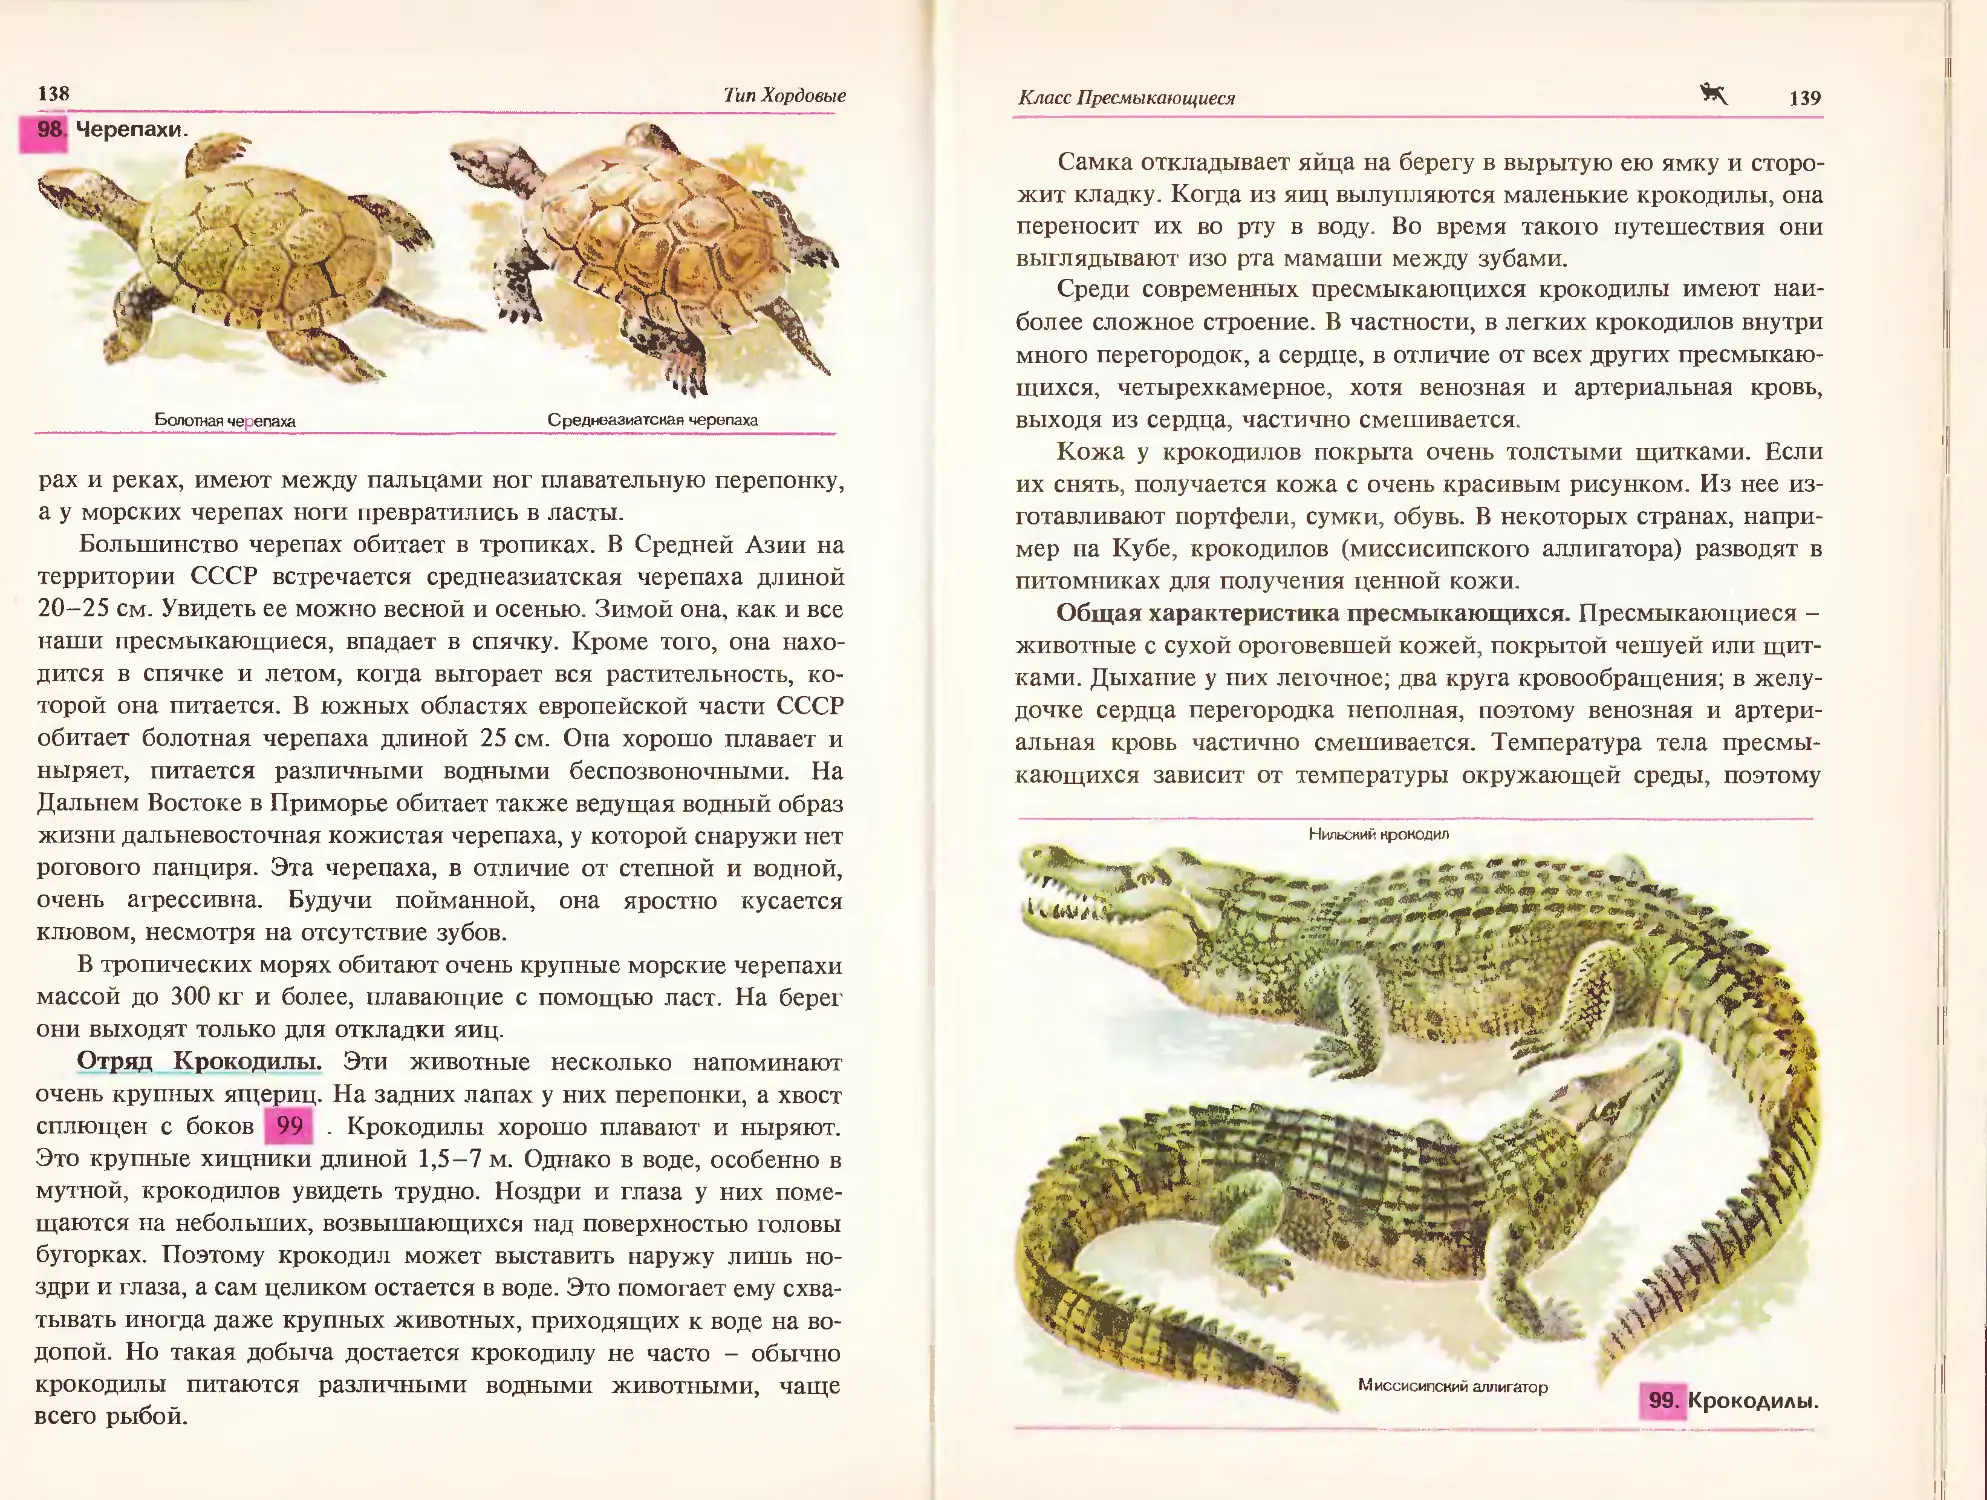 Биология Козлова животные 7-8 класс